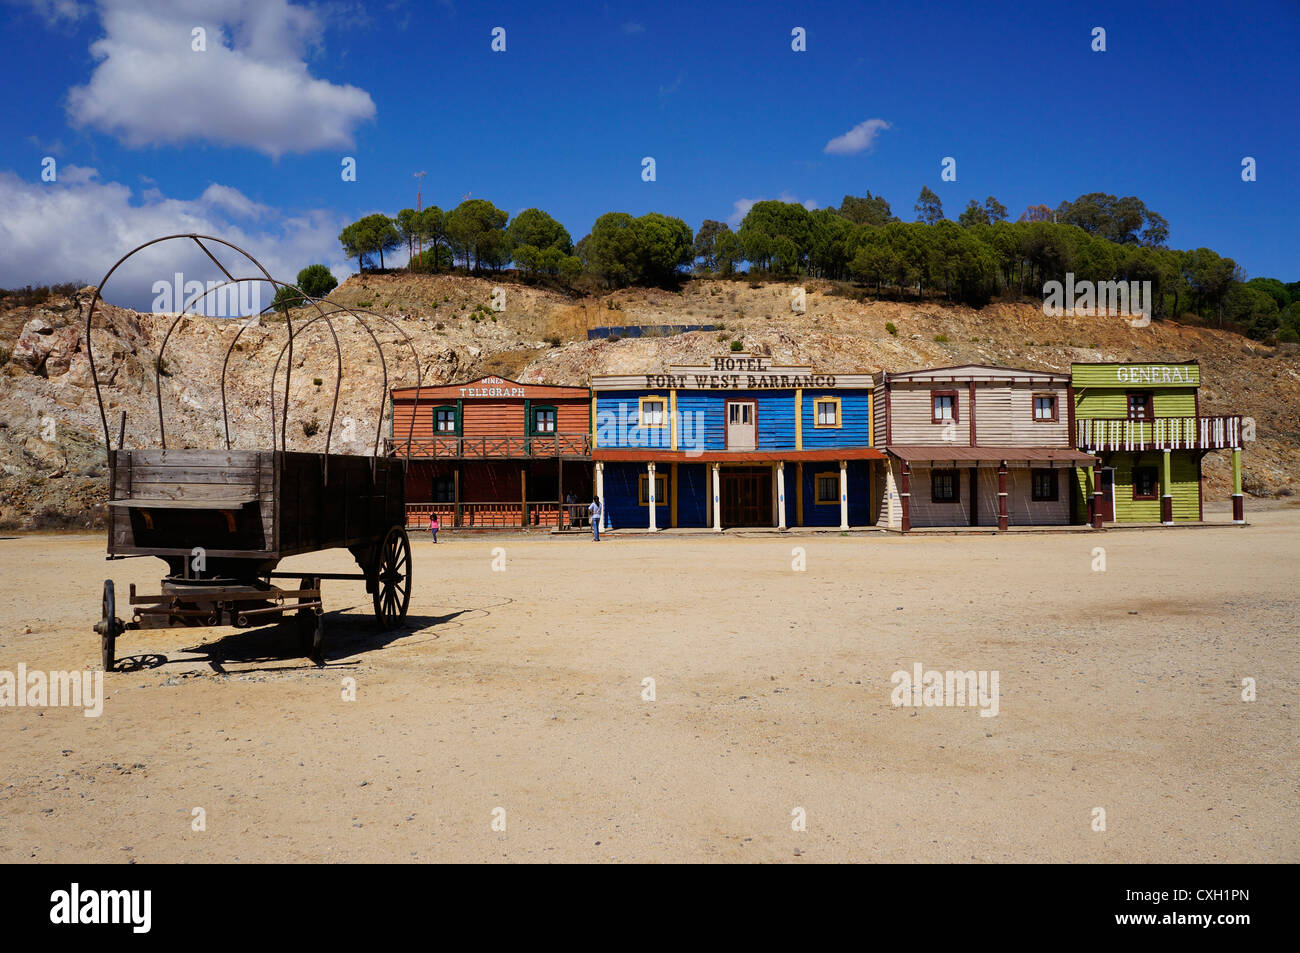 Una vista frontale di un vecchio hotel fort west Barranco e con separate di carrozze, ruota, Siviglia, Spagna Foto Stock